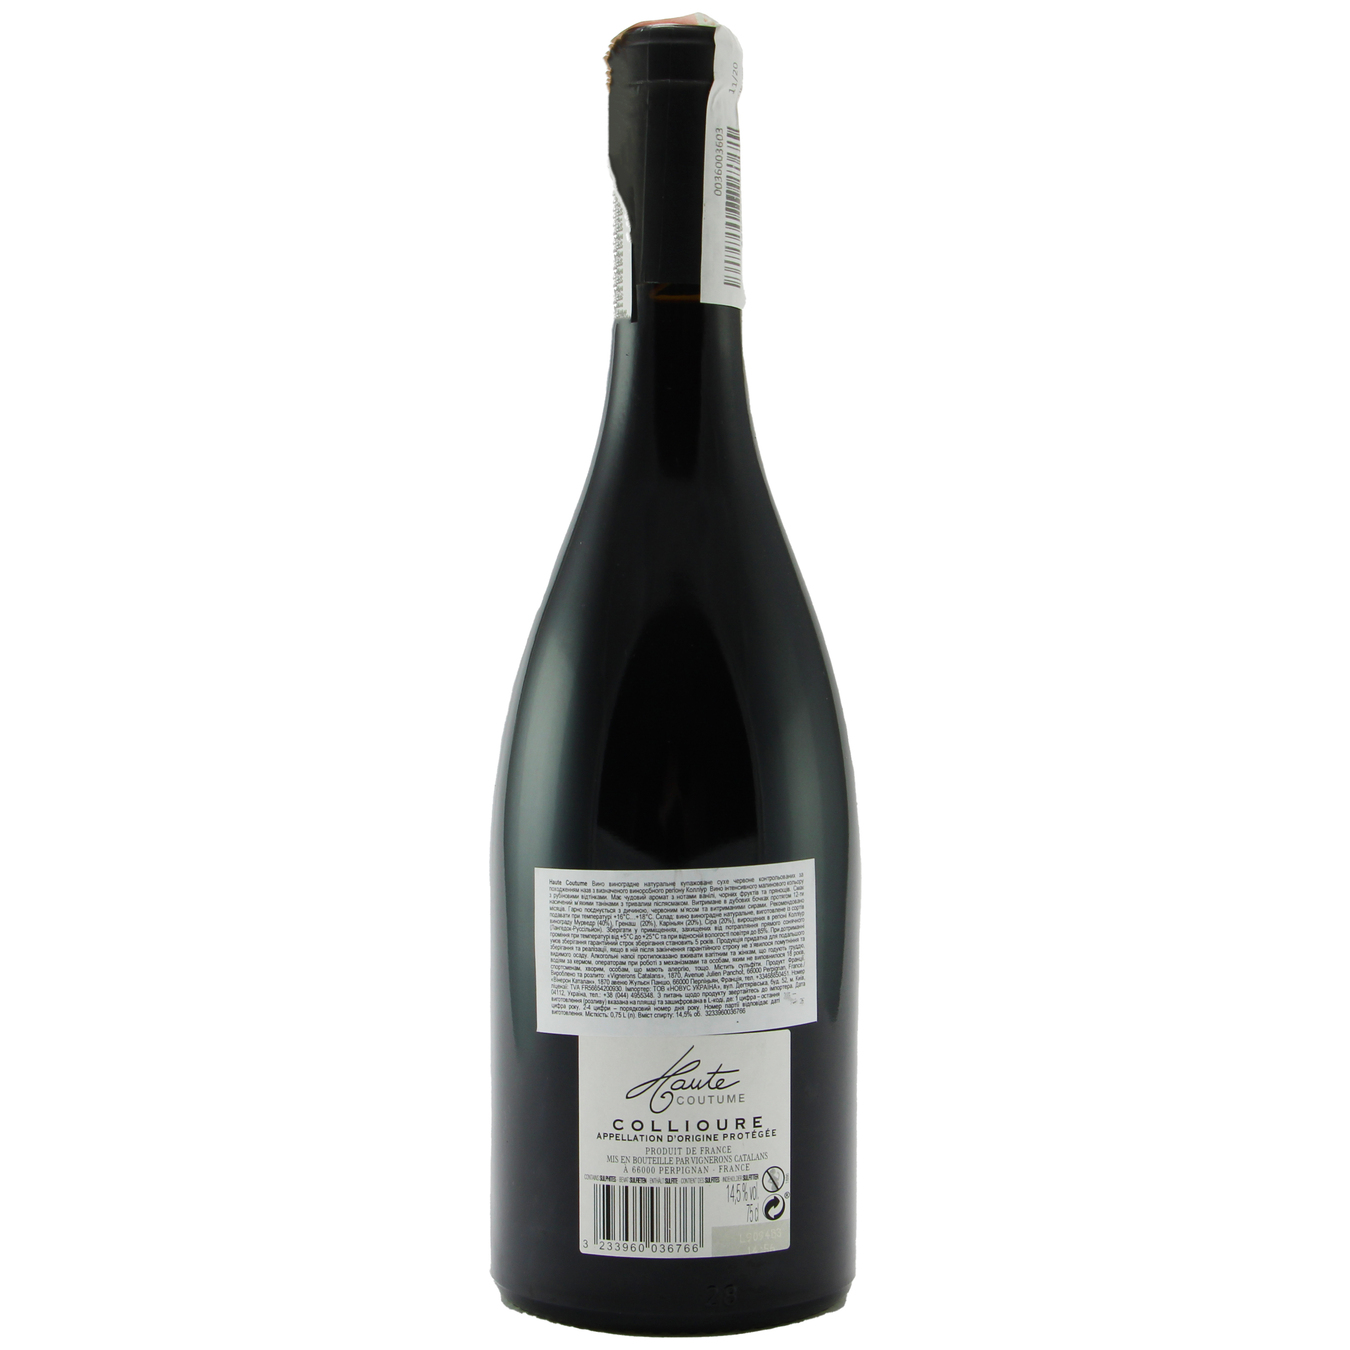 Вино Haute Coutume Collioure красное сухое 13,5% 0,75л 2